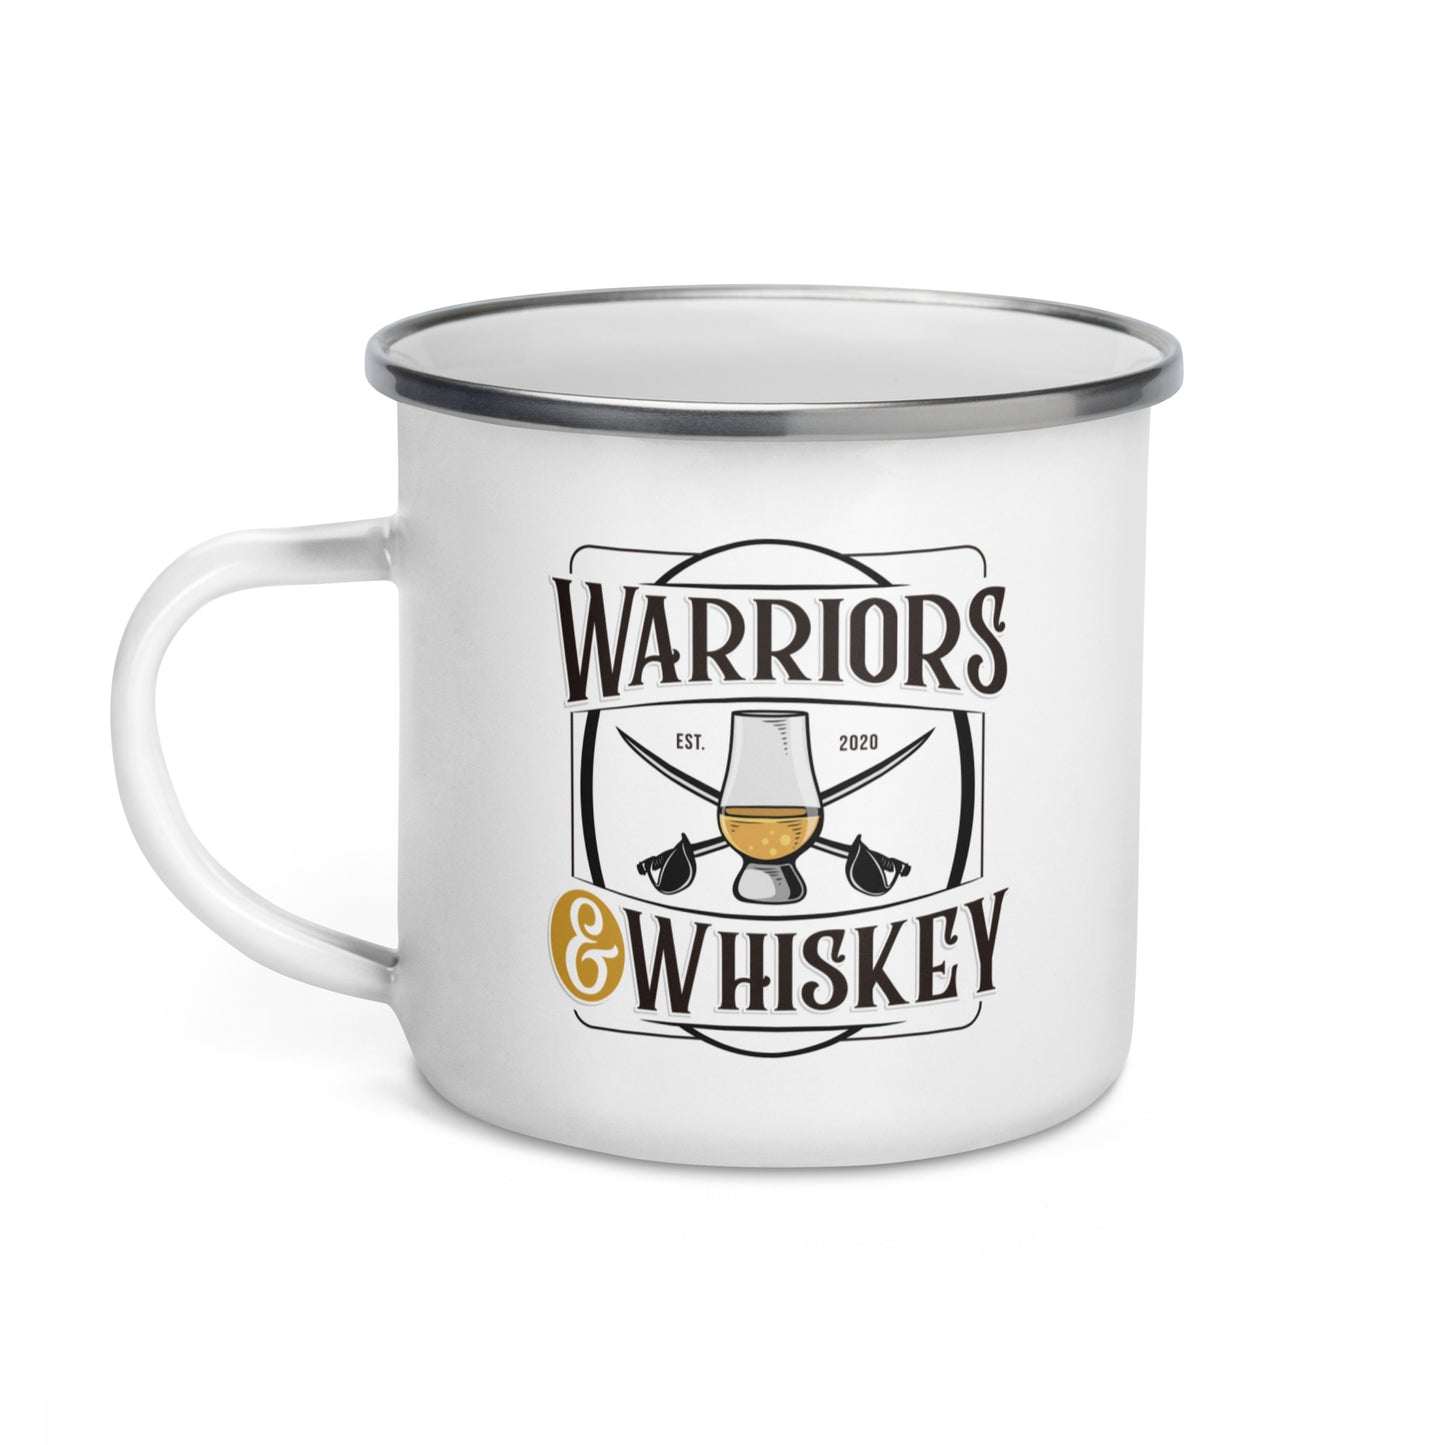 Warriors & Whiskey Enamel Mug